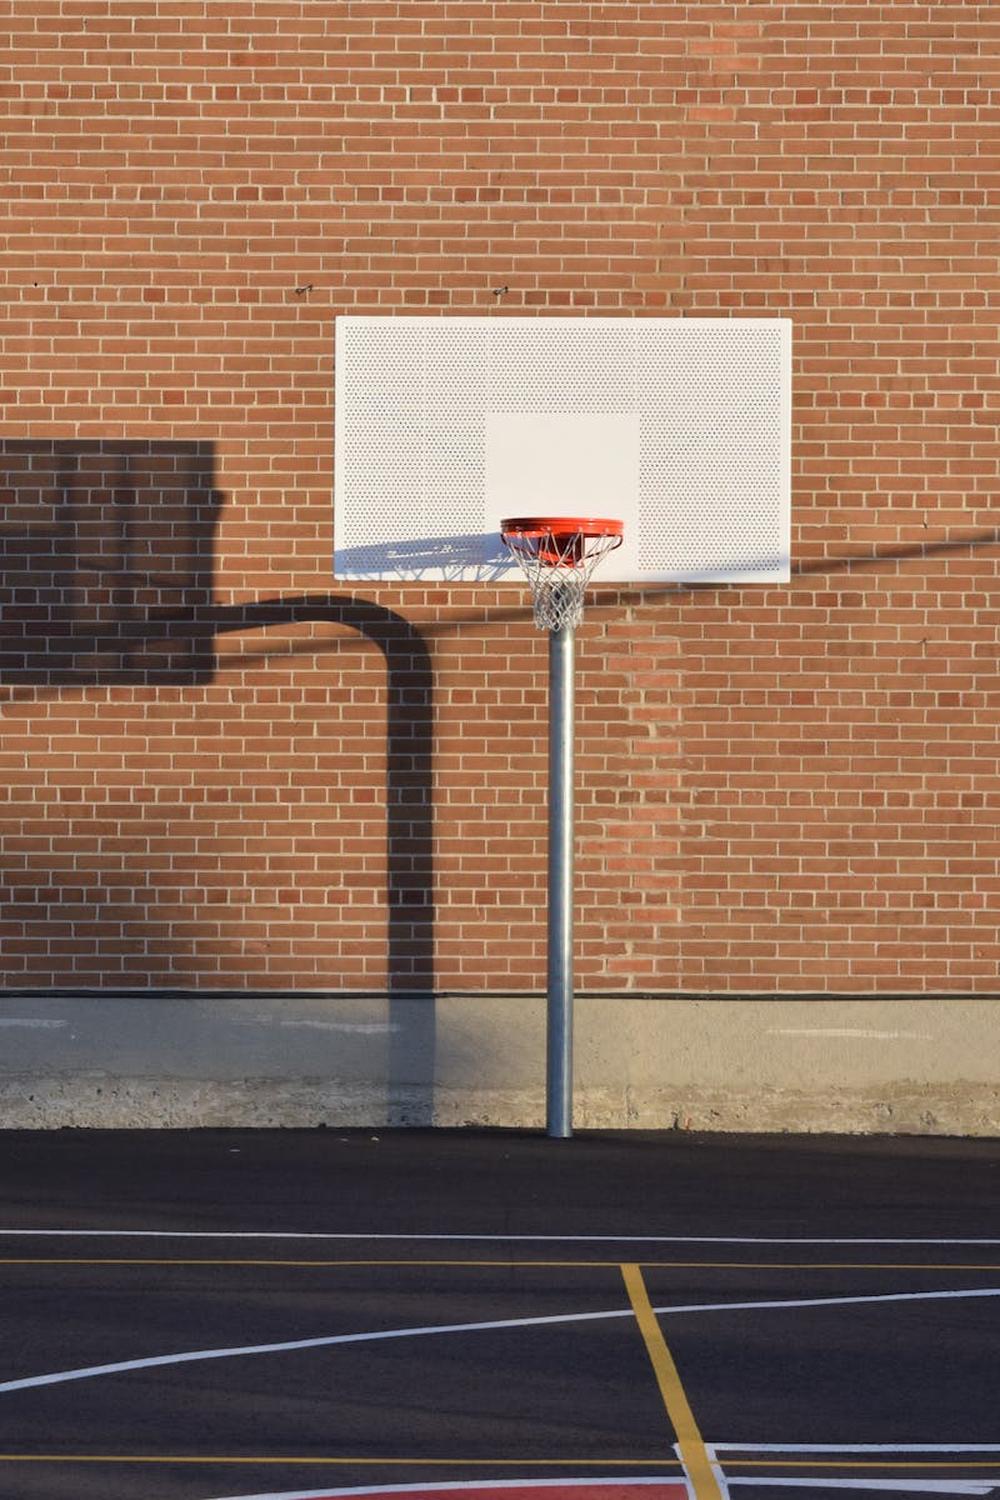 /assets/Photos/pexel/basketball_hoop_on_court.jpg